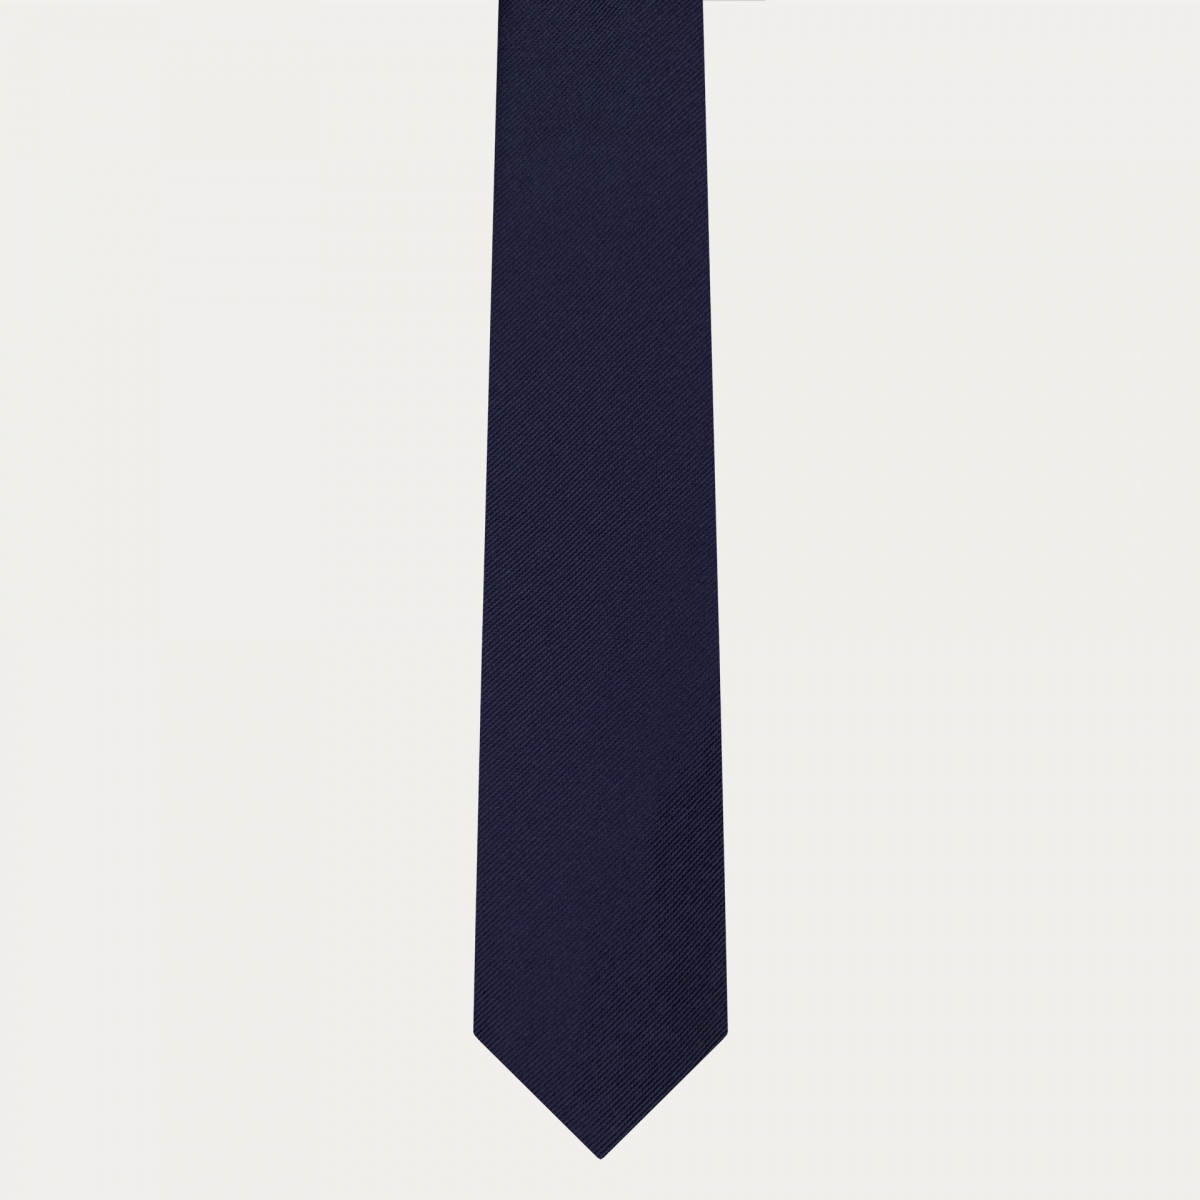 Cravate classique en soie bleu marine